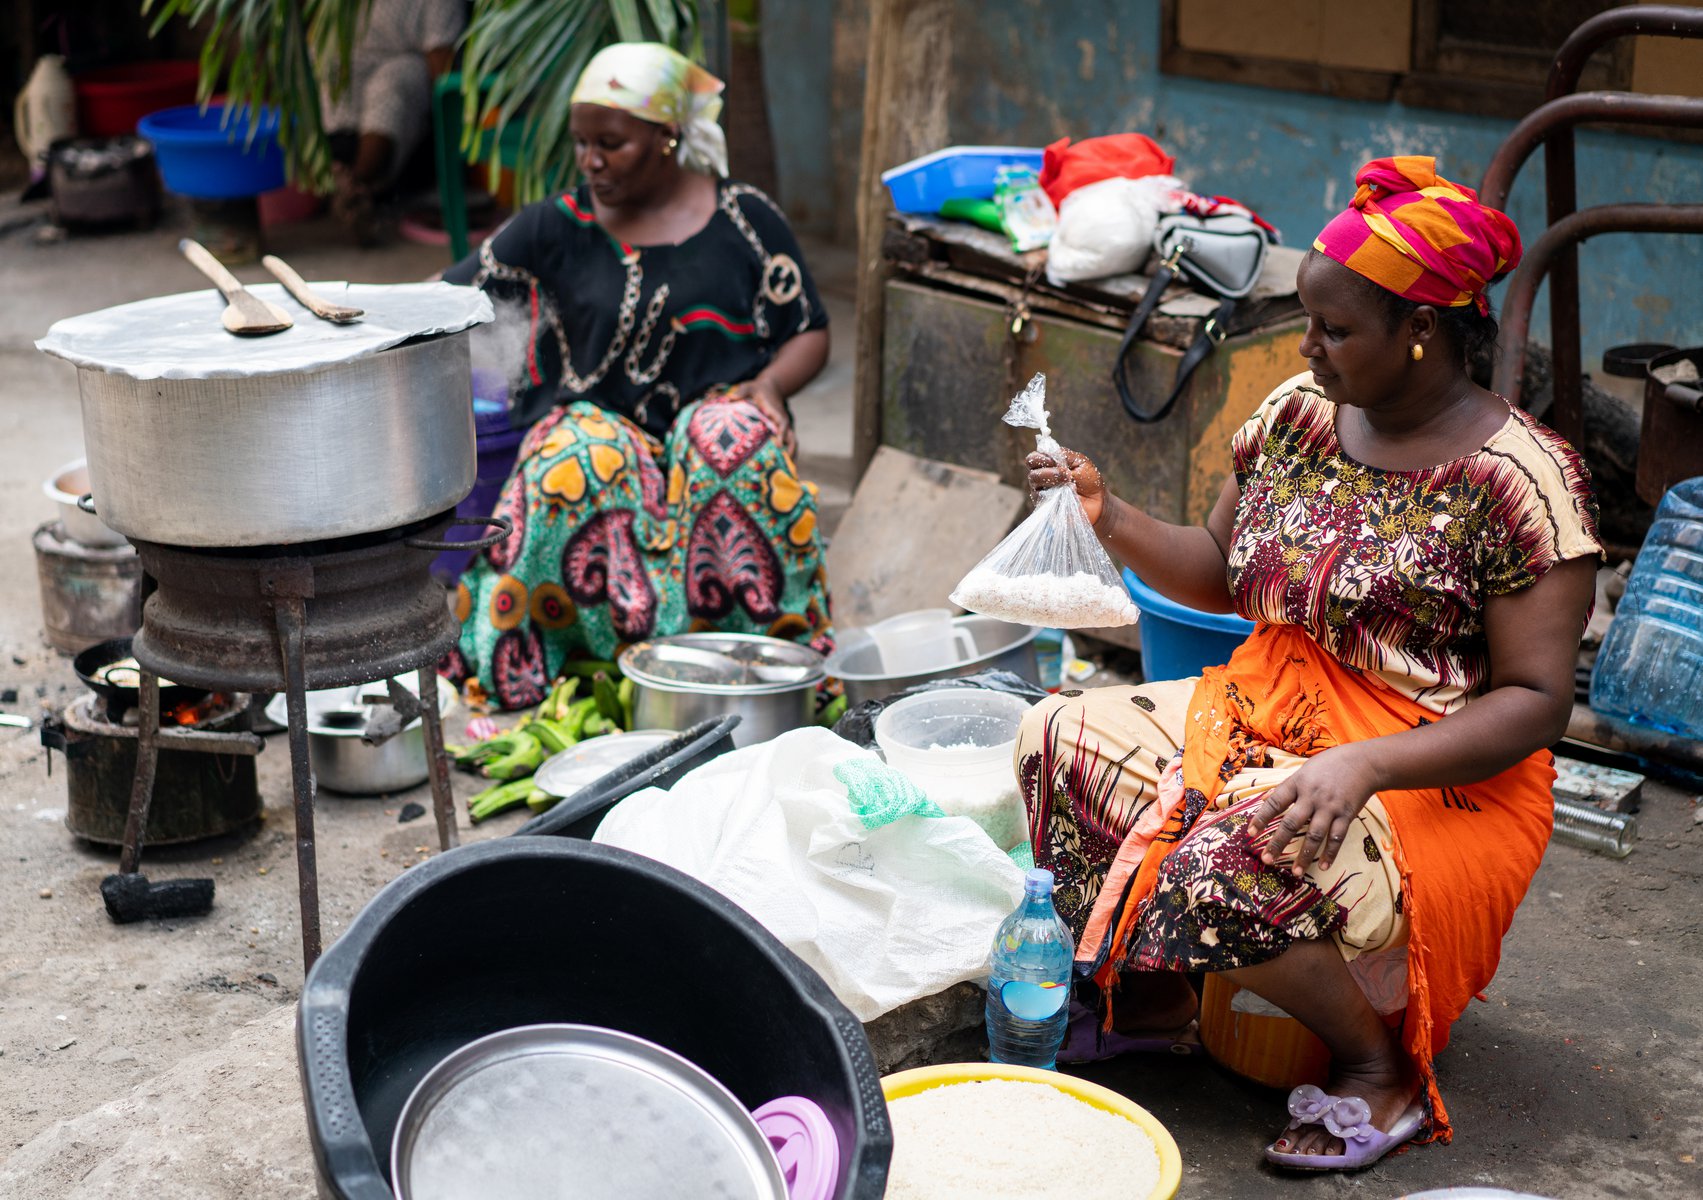 Εκεί που η παραδοσιακή κουζίνα της αφρικανικής φυλής Fulani συναντά την μοντέρνα γαστρονομία